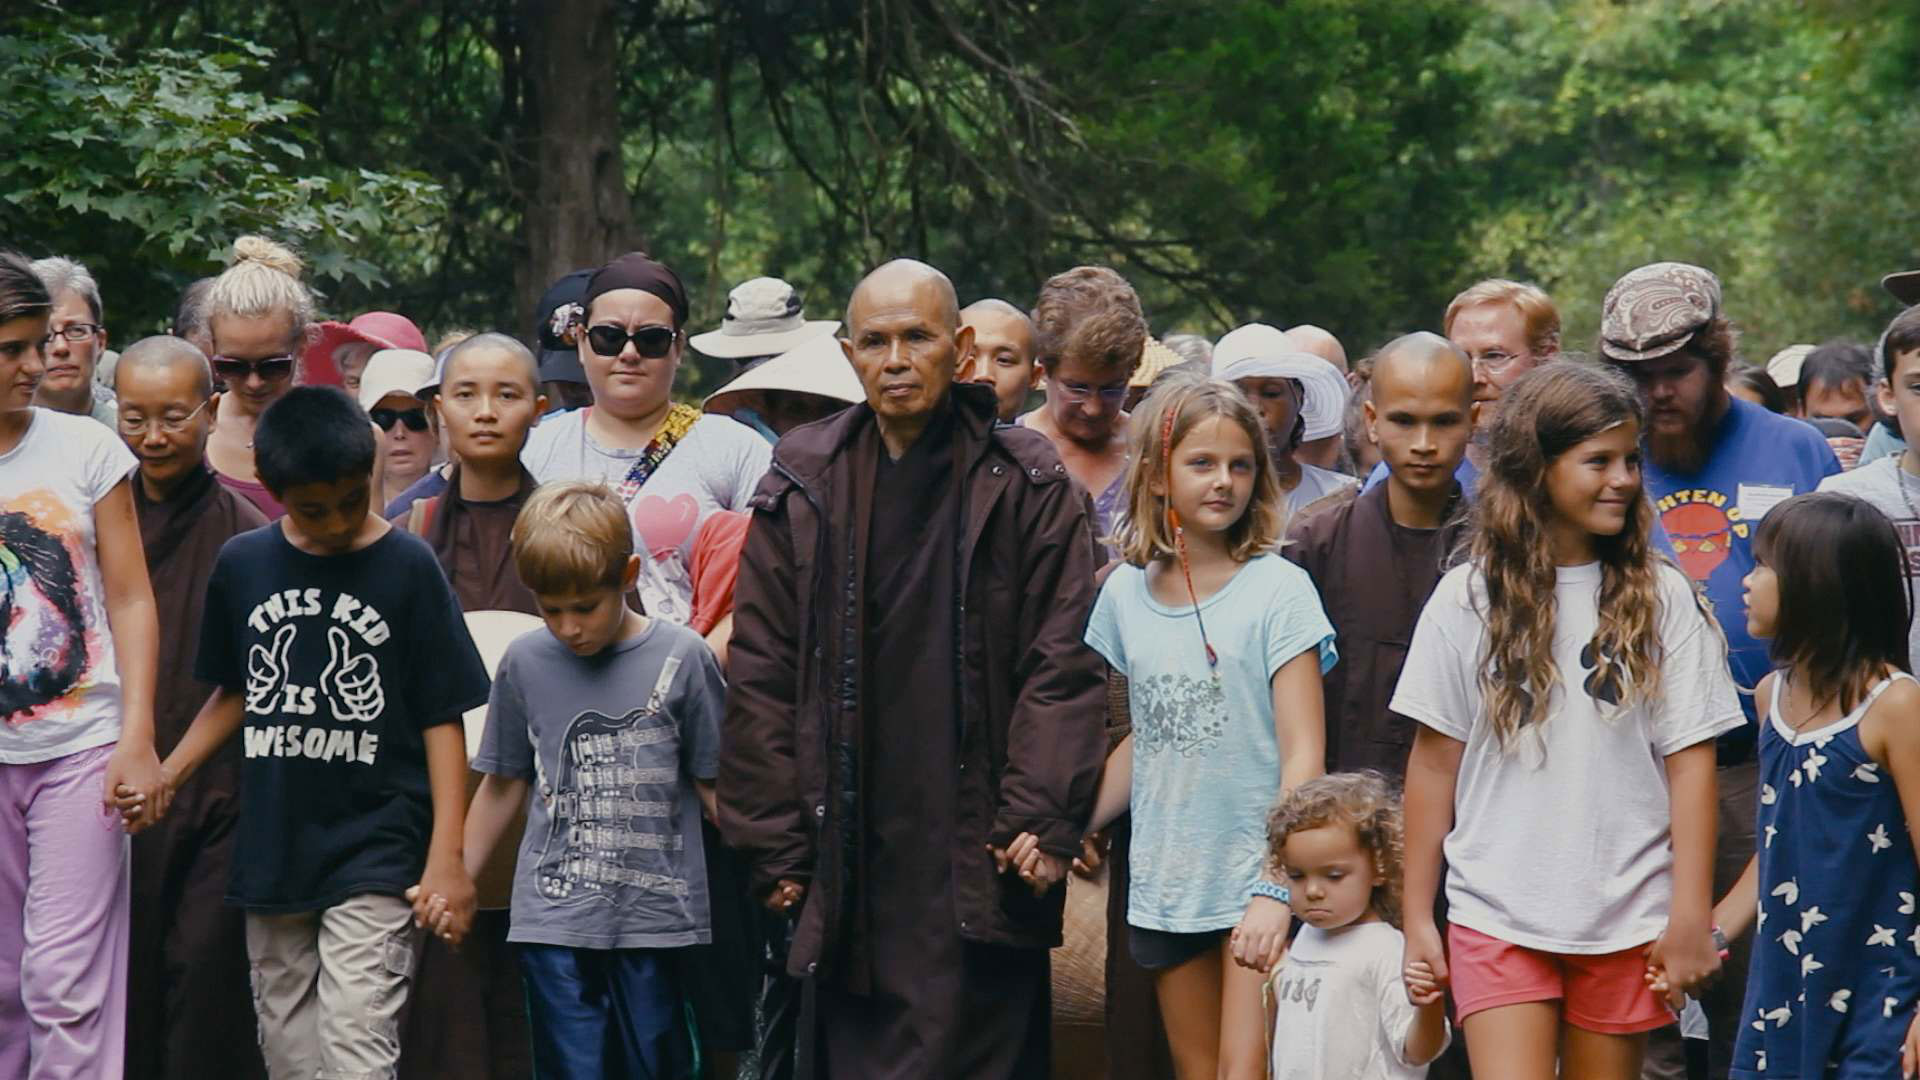 Walk with me - Un viaggio alla scoperta della mindfulness con Thich Nhat Hanh